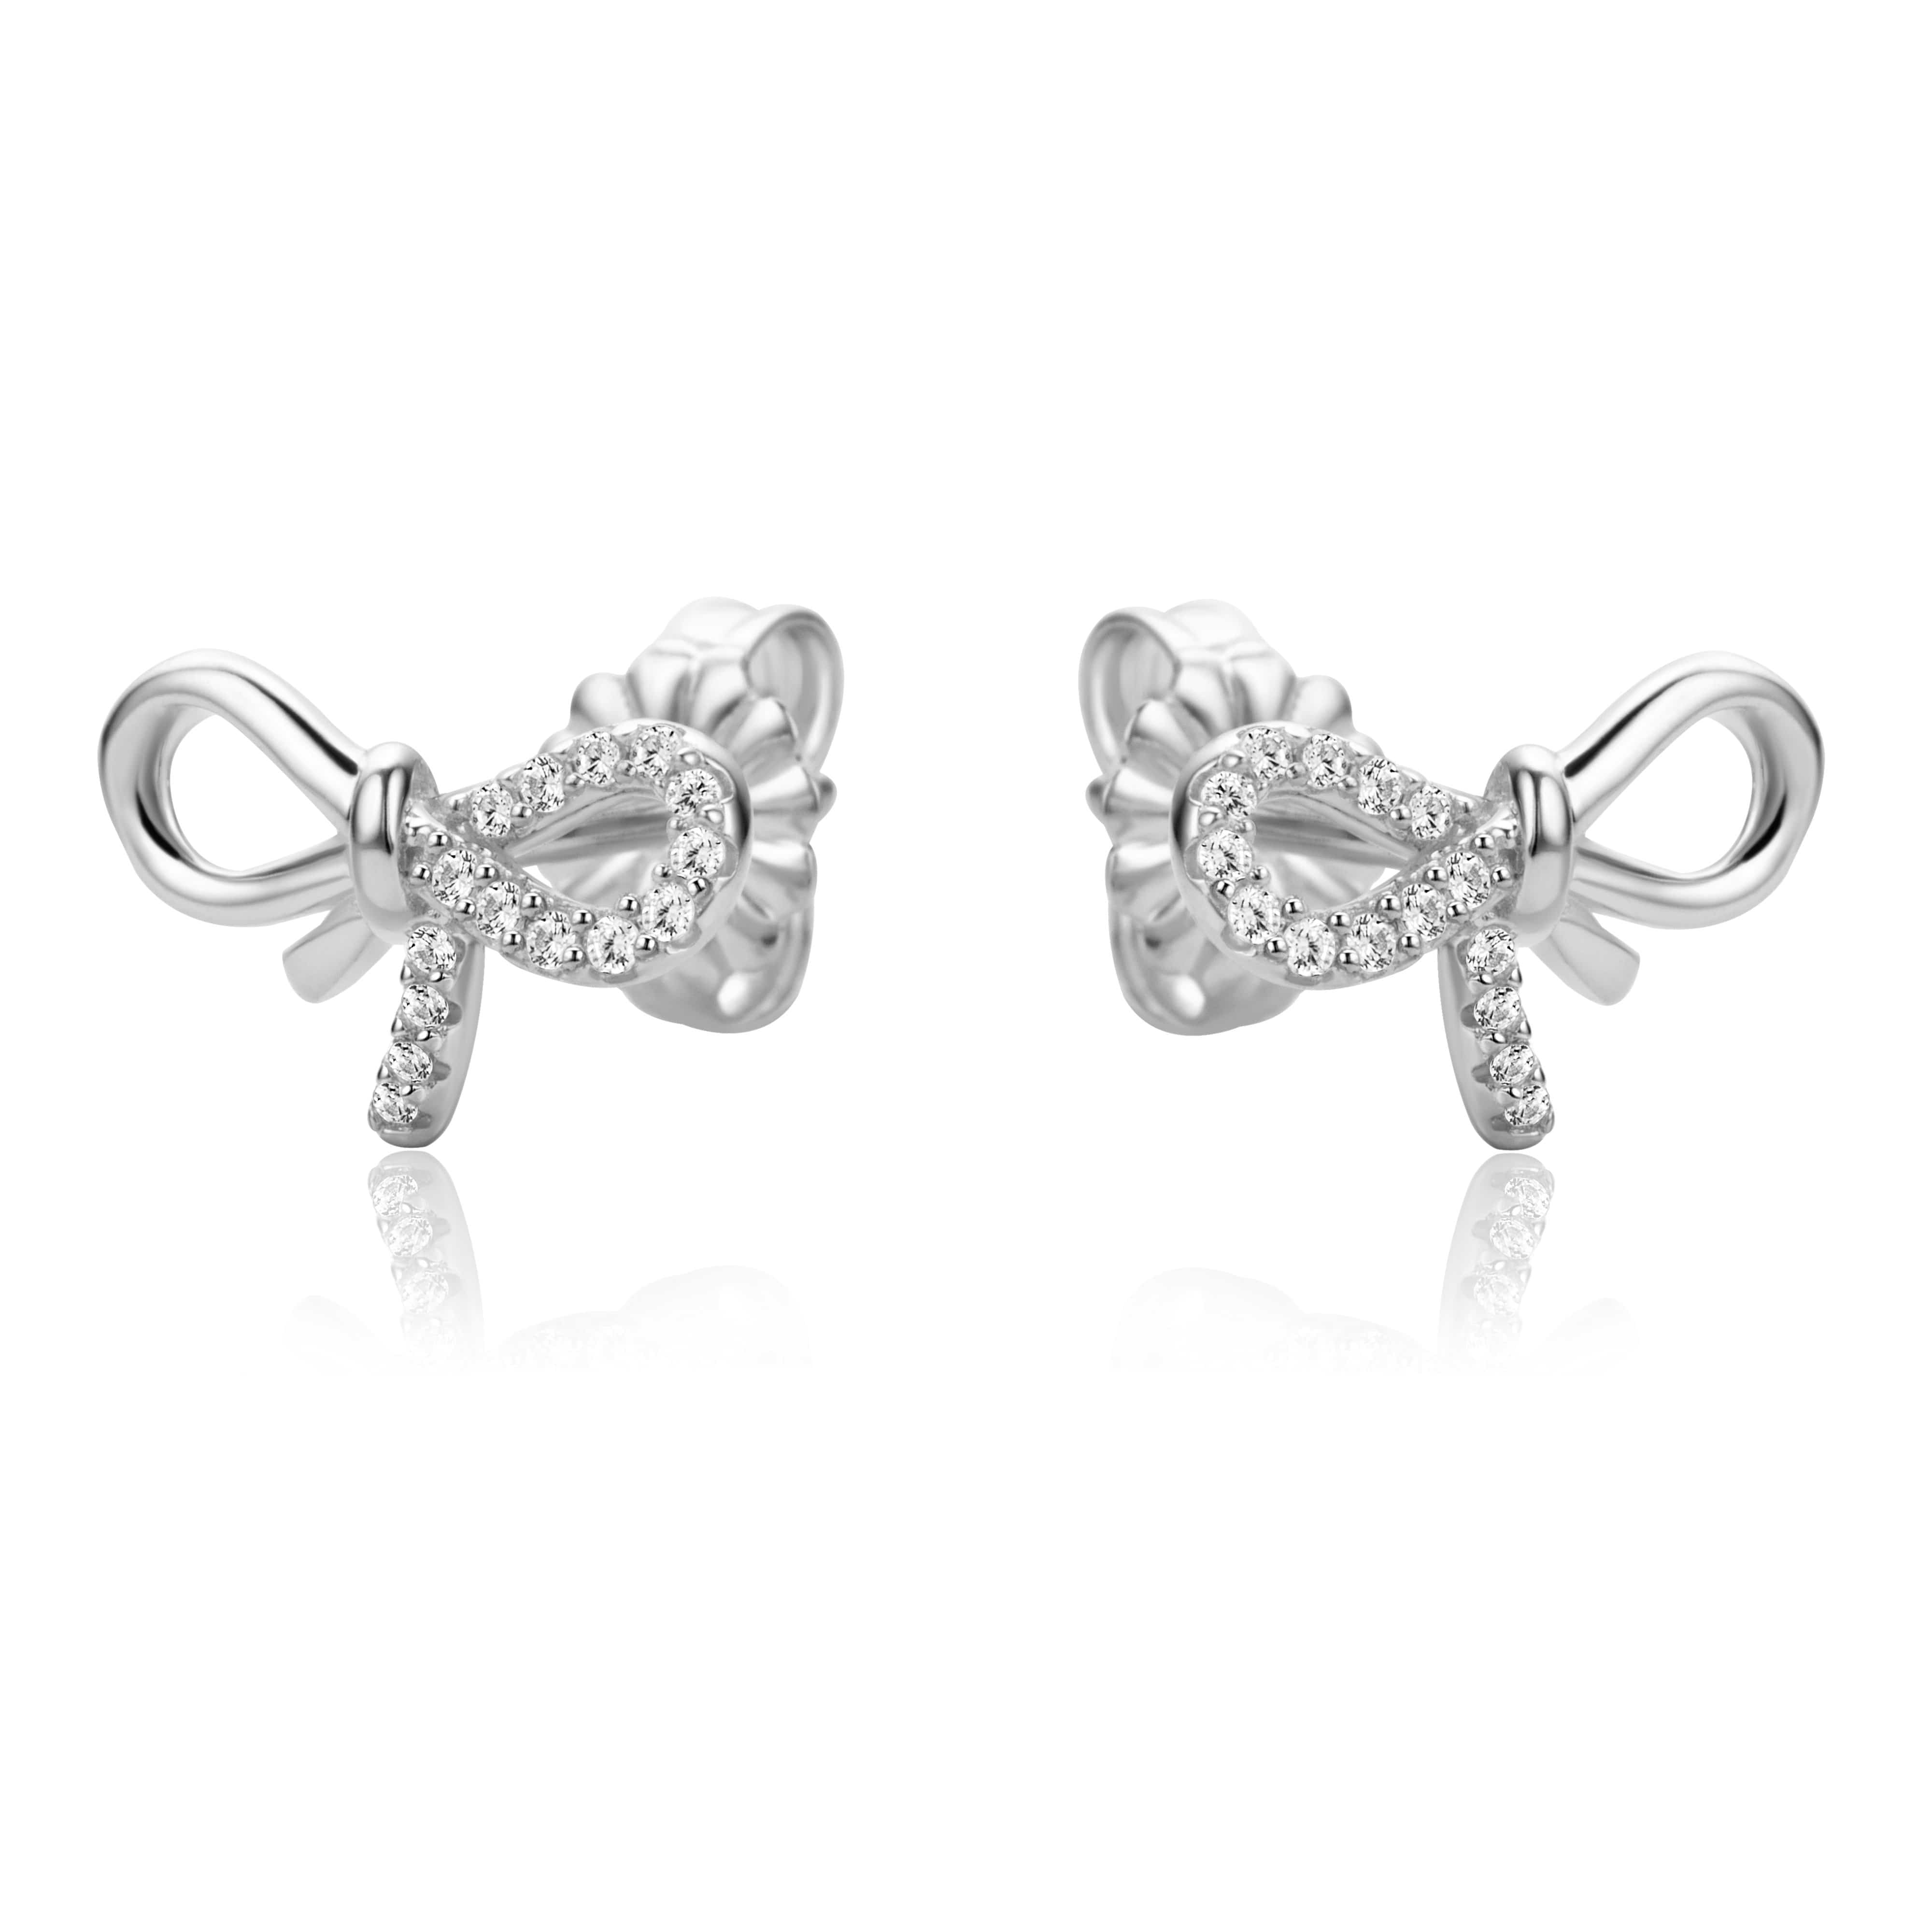 Lynora Jewellery Earring Sterling Silver Bow Earrings Sterling Silver